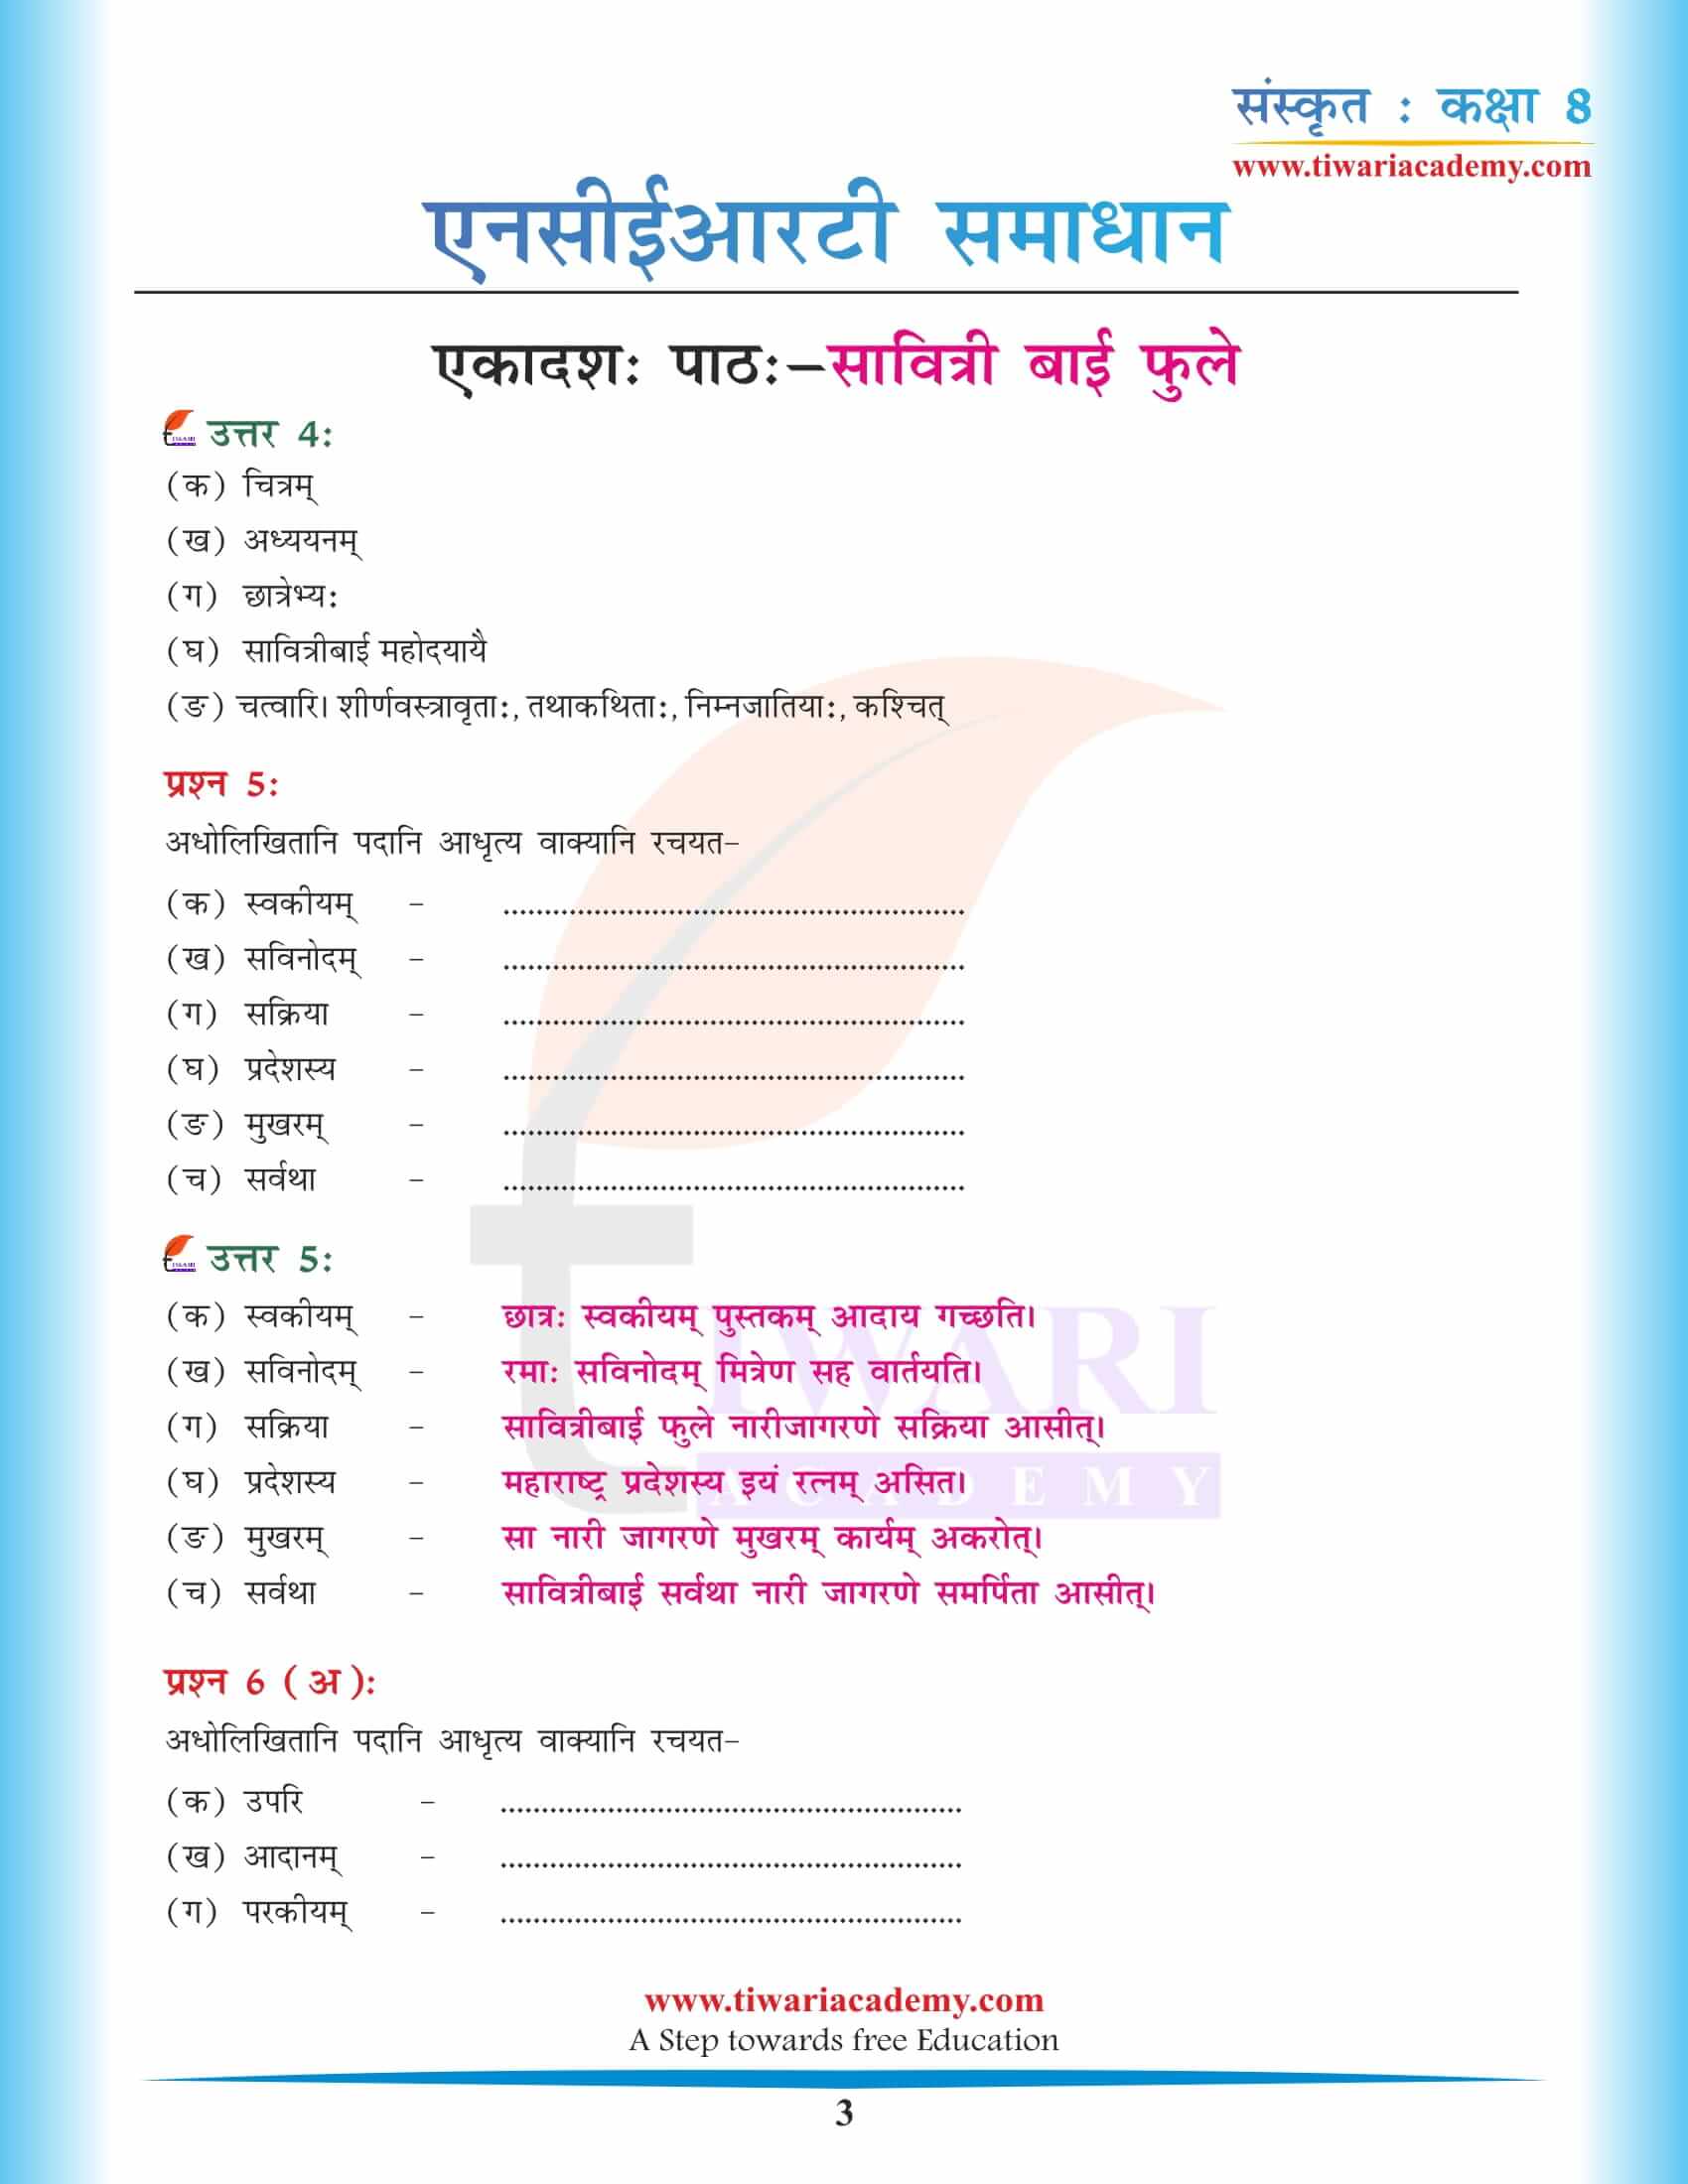 कक्षा 8 संस्कृत अध्याय 11 एनसीईआरटी के प्रश्न उत्तर हिंदी में